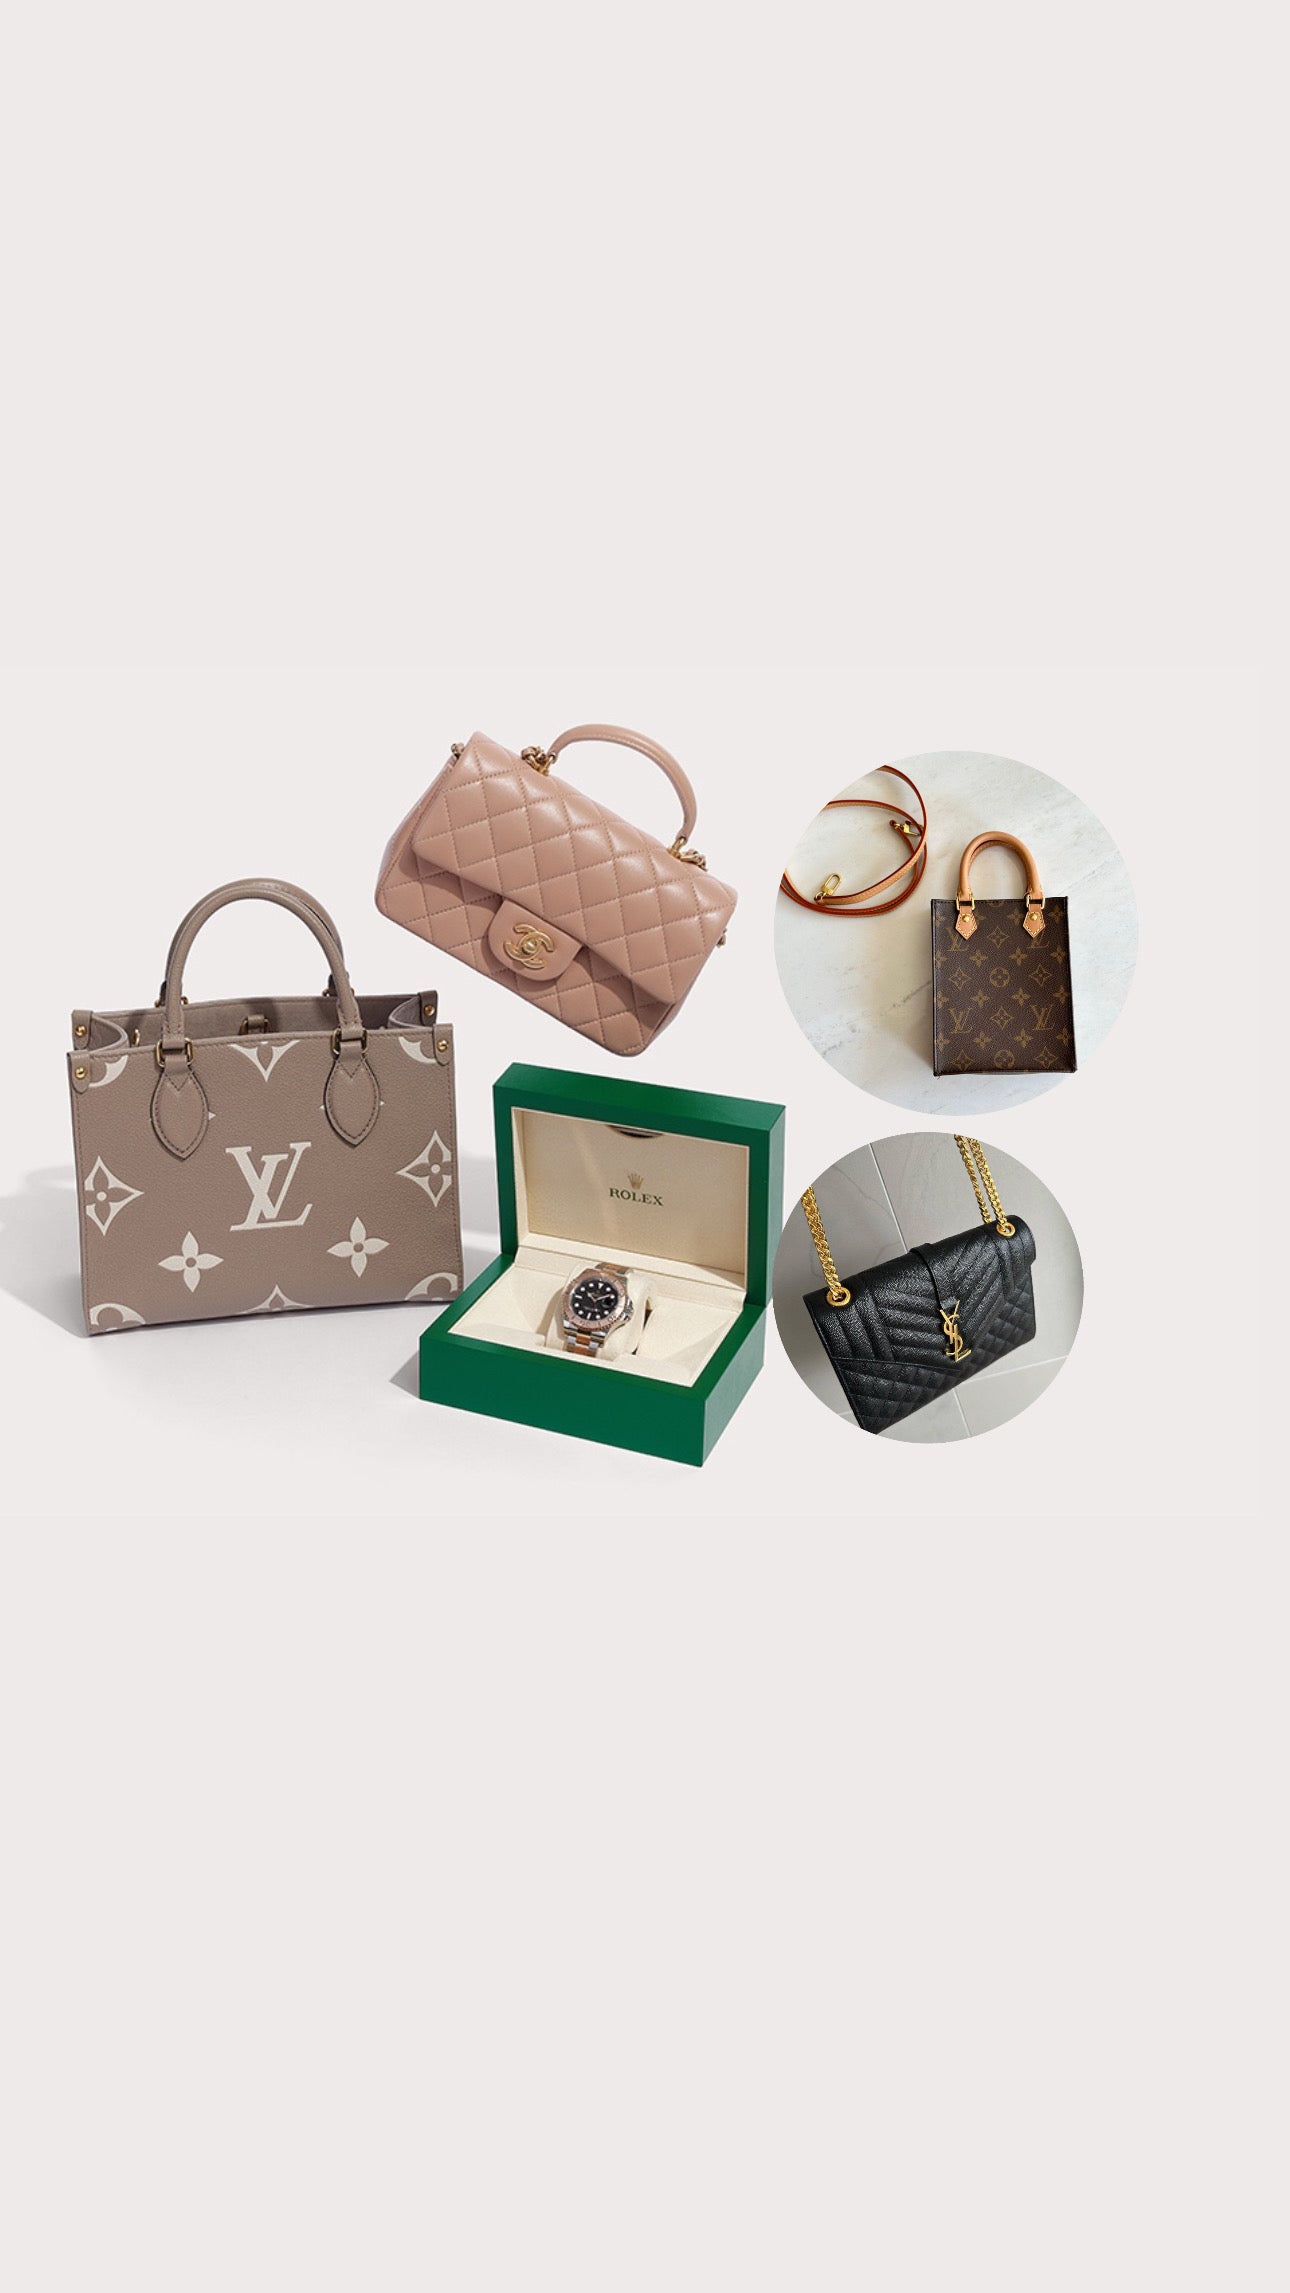 Louis Vuitton, Luxury Resale